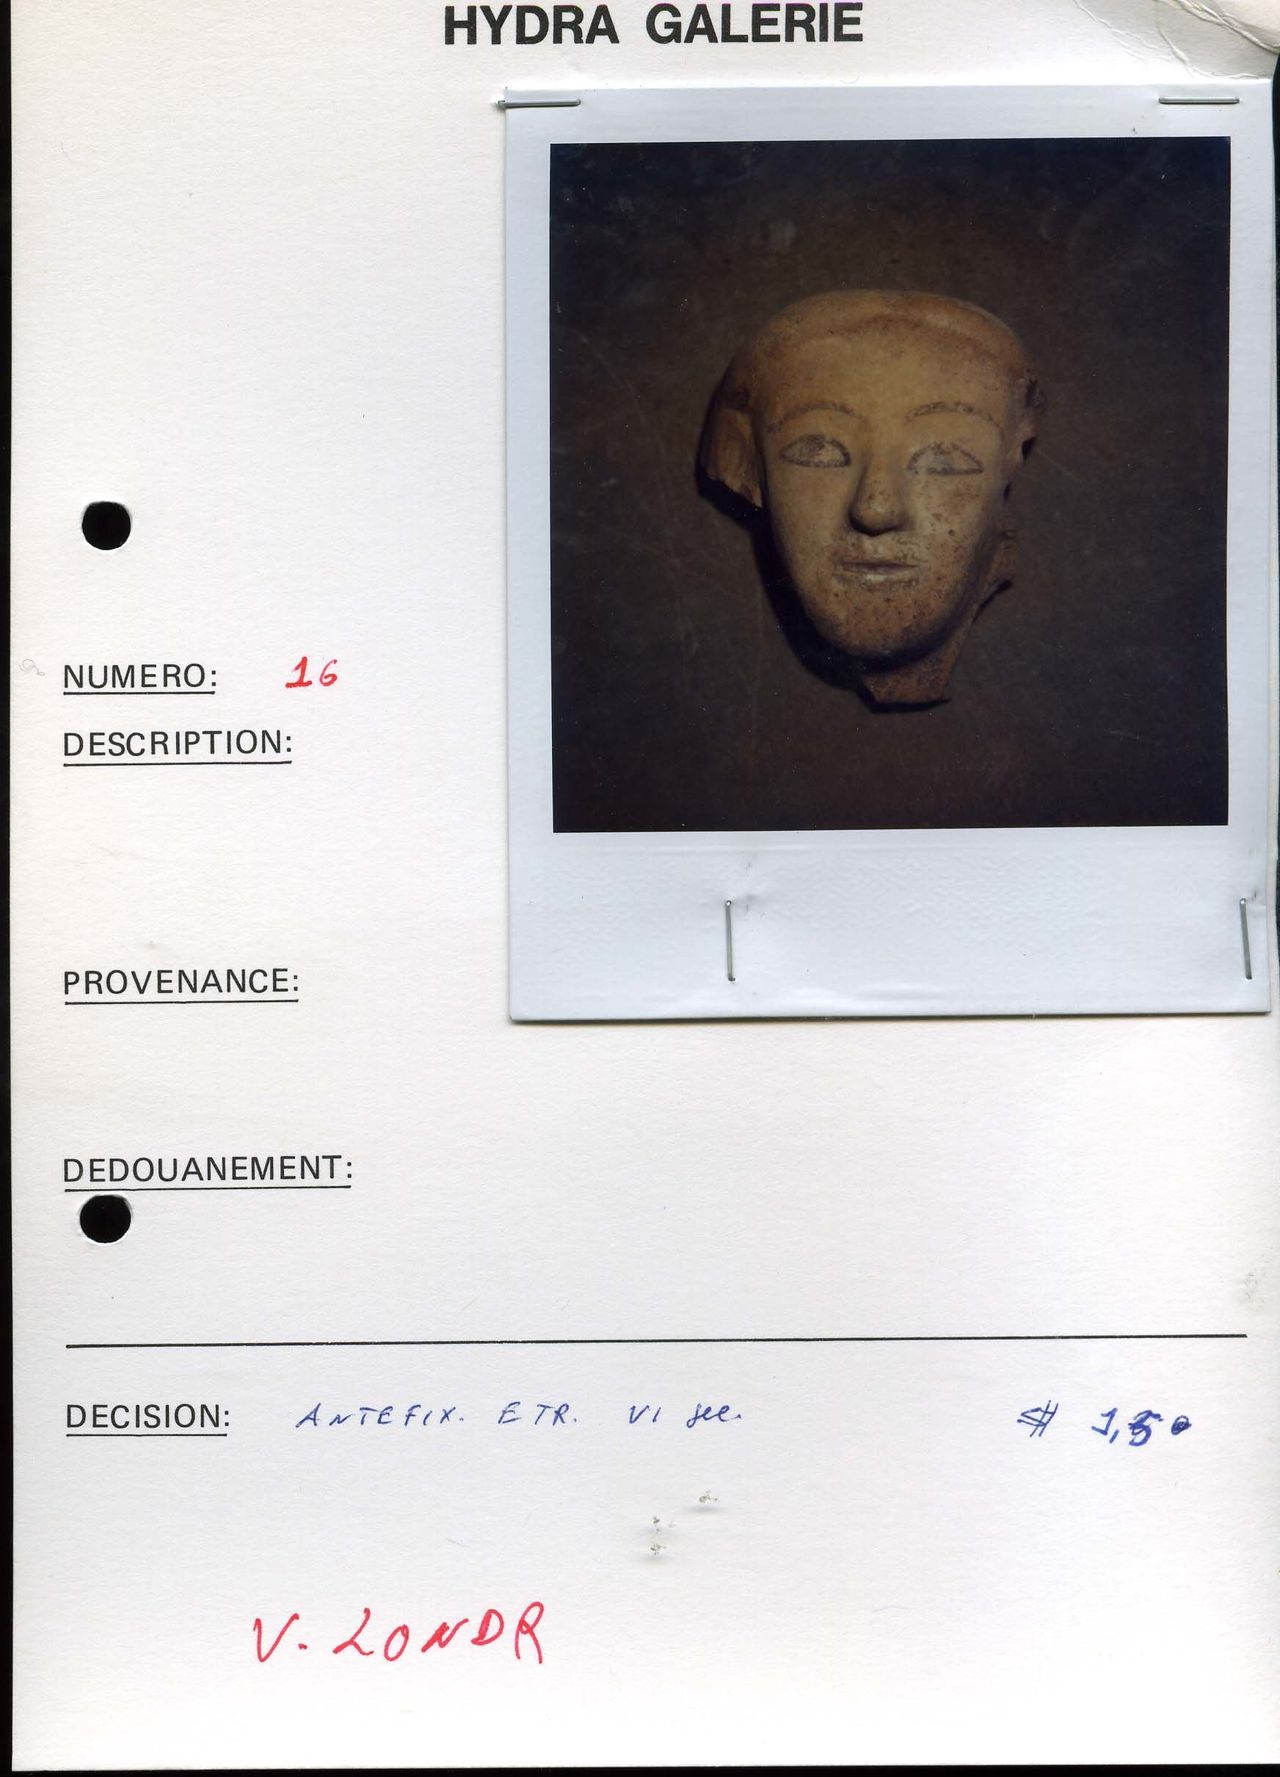 Κεφάλι Ετρούσκου από τη συλλογή του αρχαιοκάπηλου Τζιάκομο Μέντιτσι. Αναγνωρίστηκε στους Bonhams το Νοέμβριο του 2016